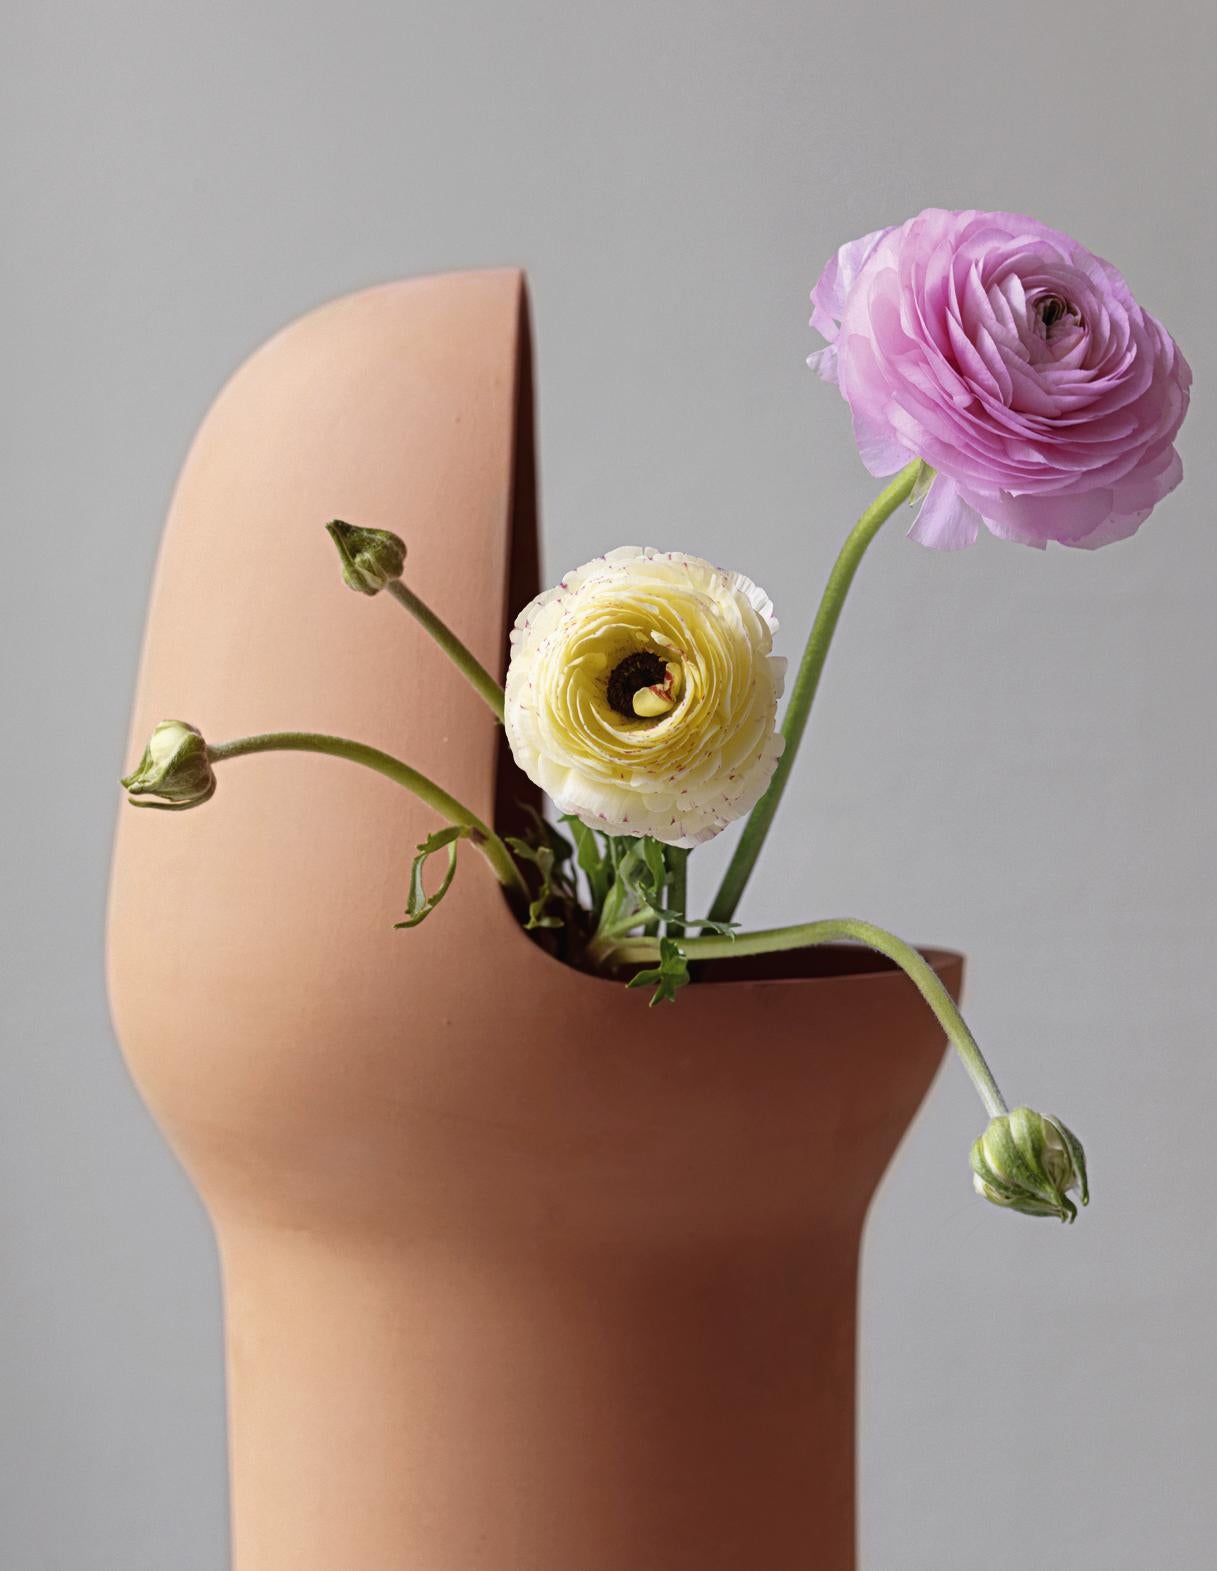 Jaime Hayon a conçu les vases Gardenia en terre cuite pour compléter sa collection de mobilier d'extérieur. Leur forme est unique, illustrant la marque de fabrique incomparable de Hayon en matière de design. 
Les vases sont fabriqués à la main en